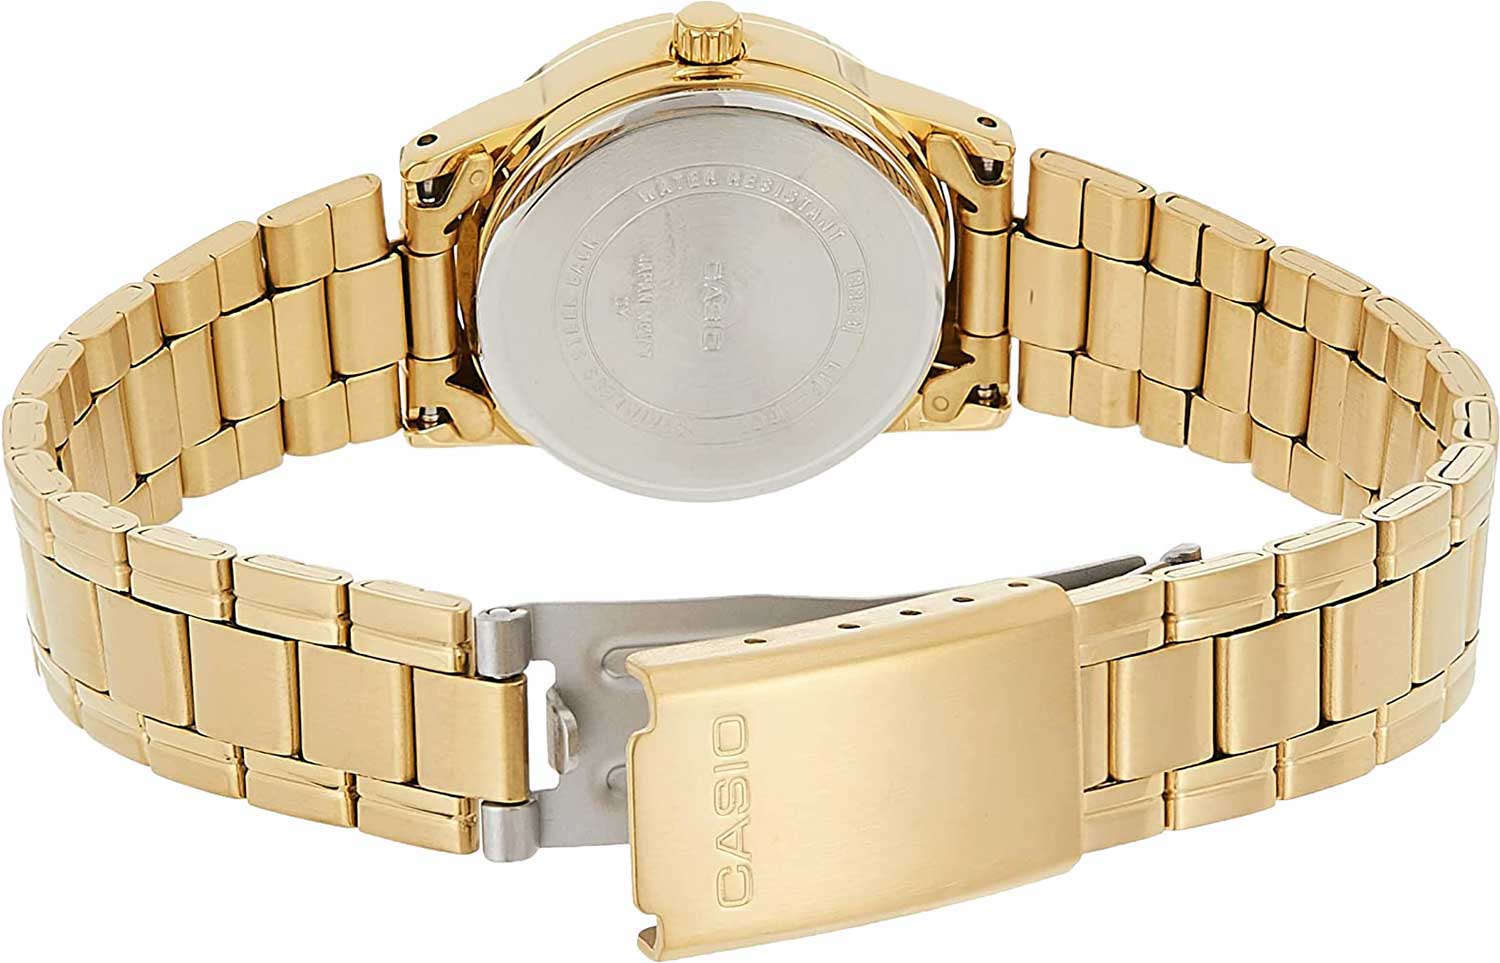 Женские часы CASIO Collection LTP-V002G-7B